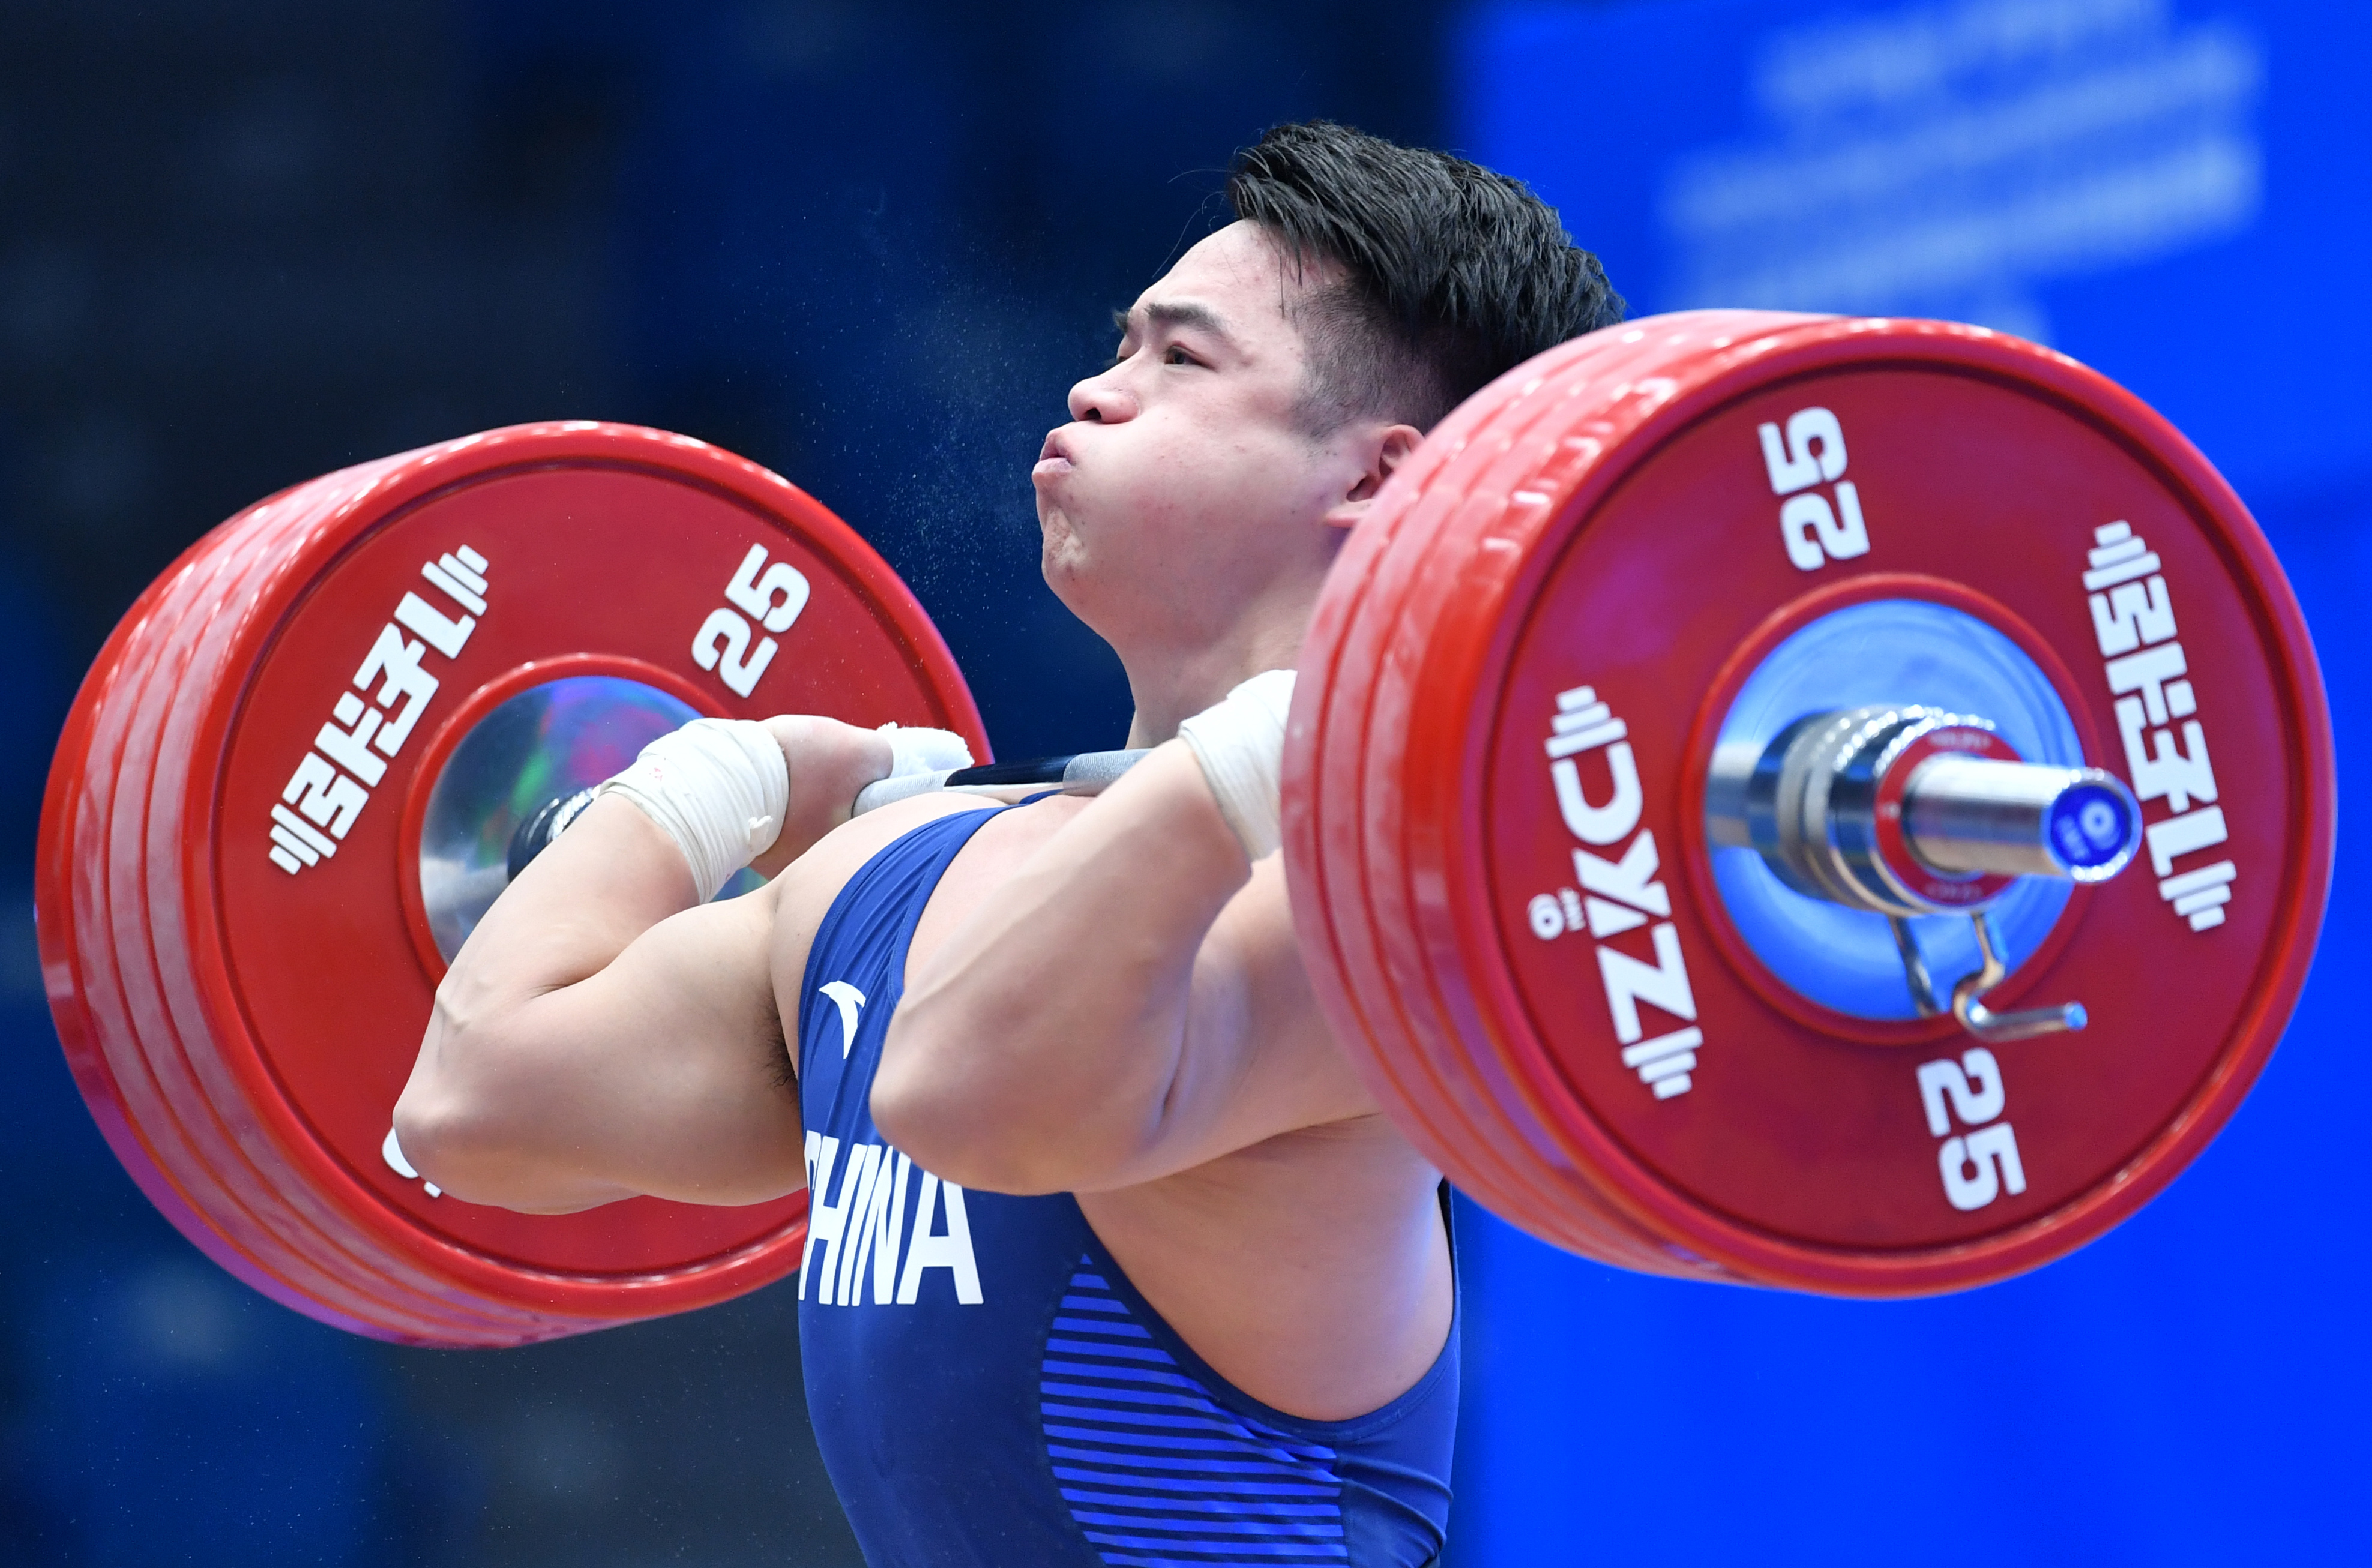 2019年12月11日,举重世界杯赛,中国选手田涛在96公斤级挺举比赛中